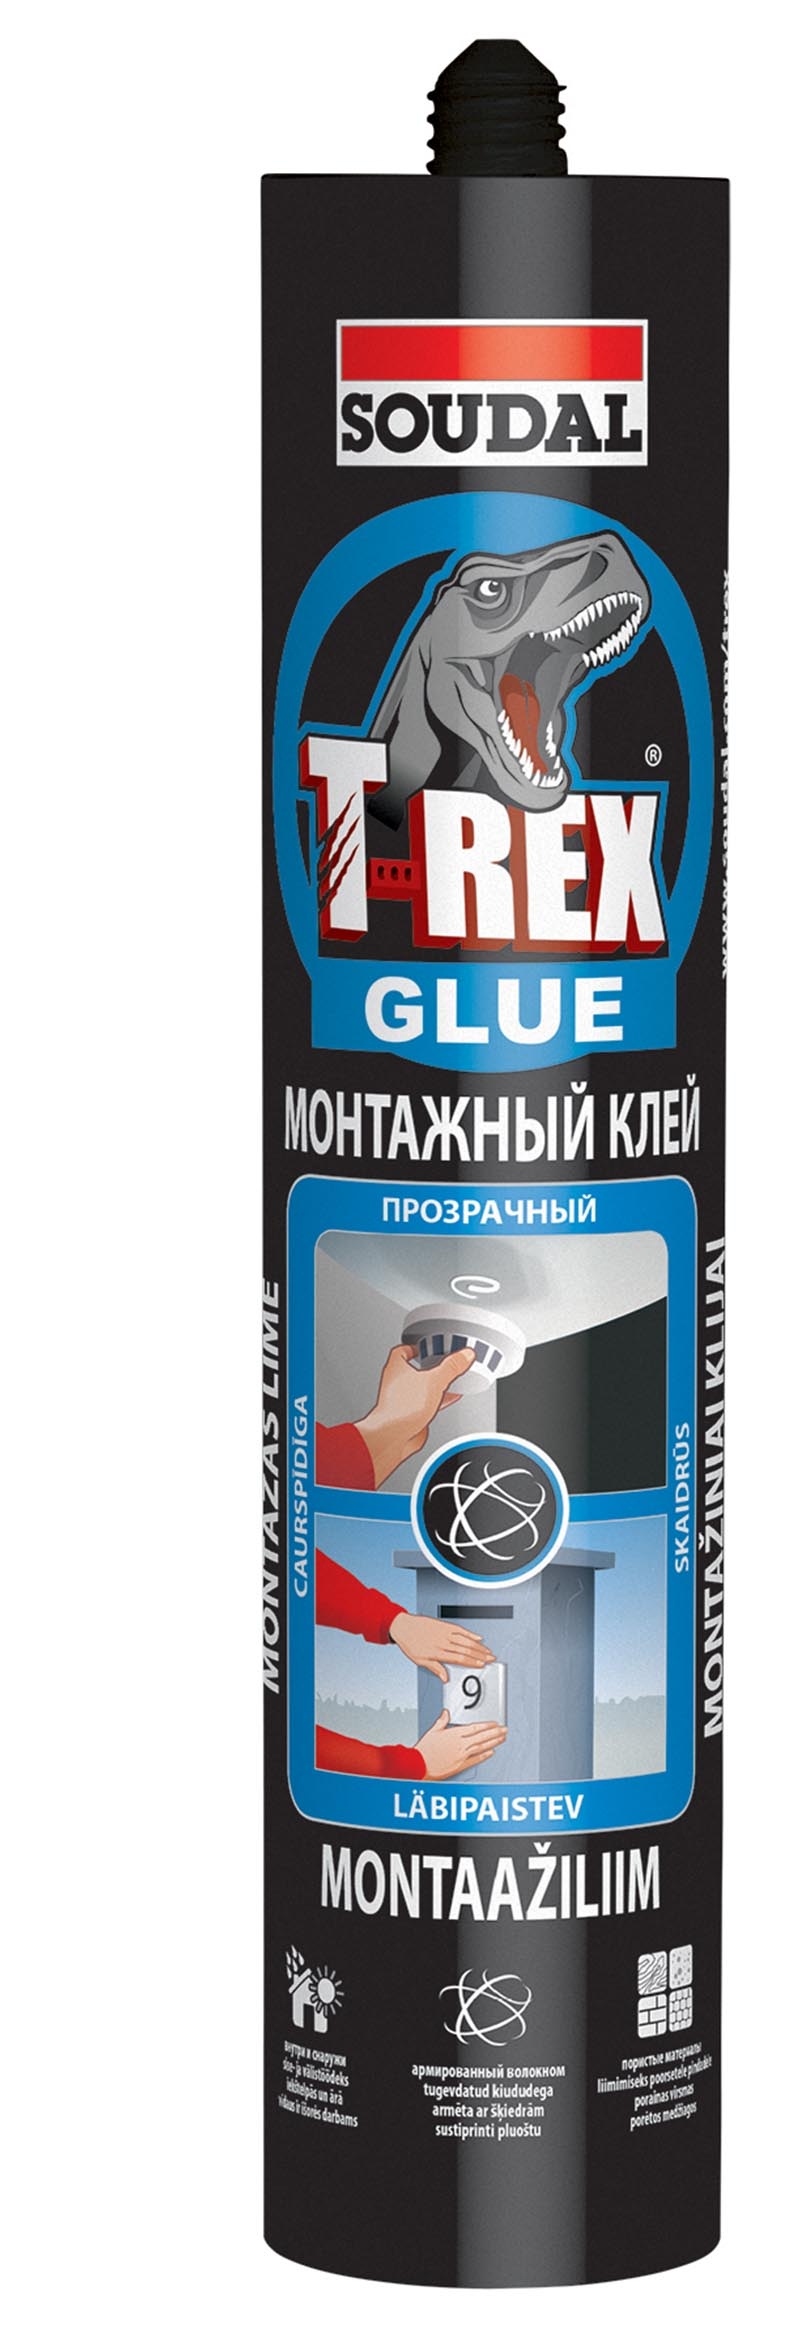 Монтажный клей T-REX Glue прозрачный 310 мл (уп. 12 шт) арт. 127169